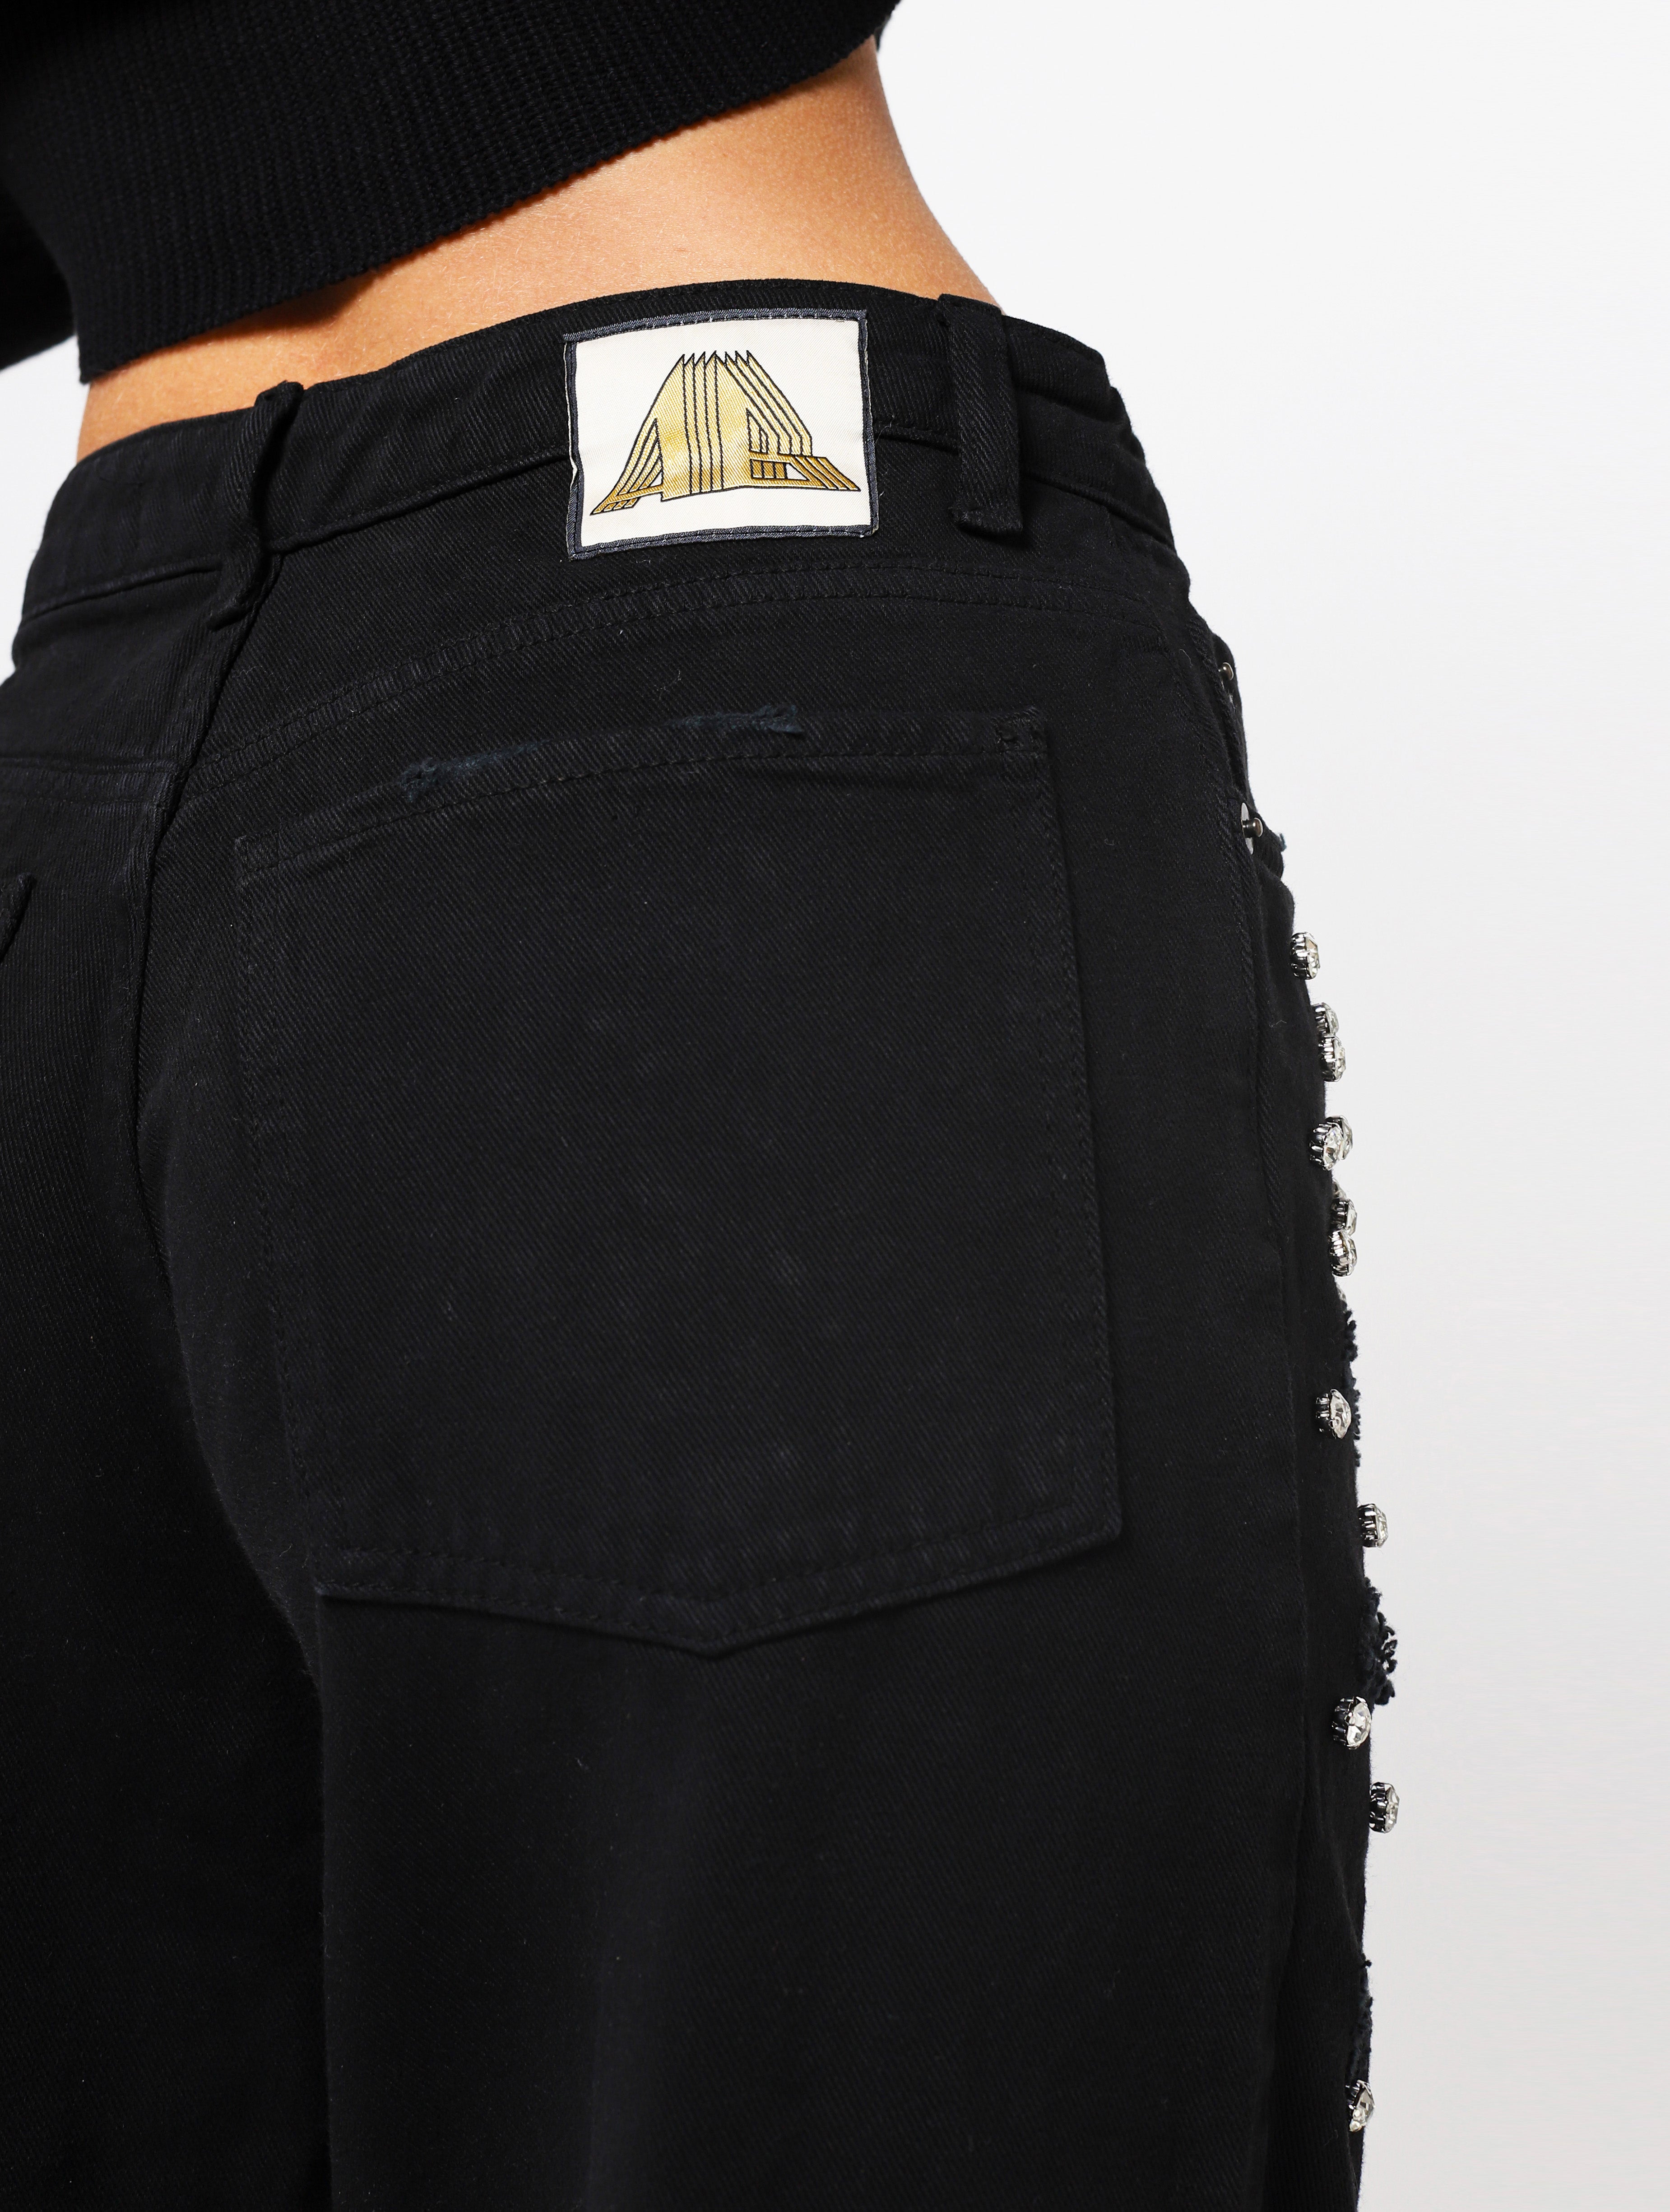 Jeans con 5 tasche, gioielli applicati e lacerazioni sulla parte frontale del pantalone, patch applicata posteriore piccola con nome del brand - nero donna  - 4